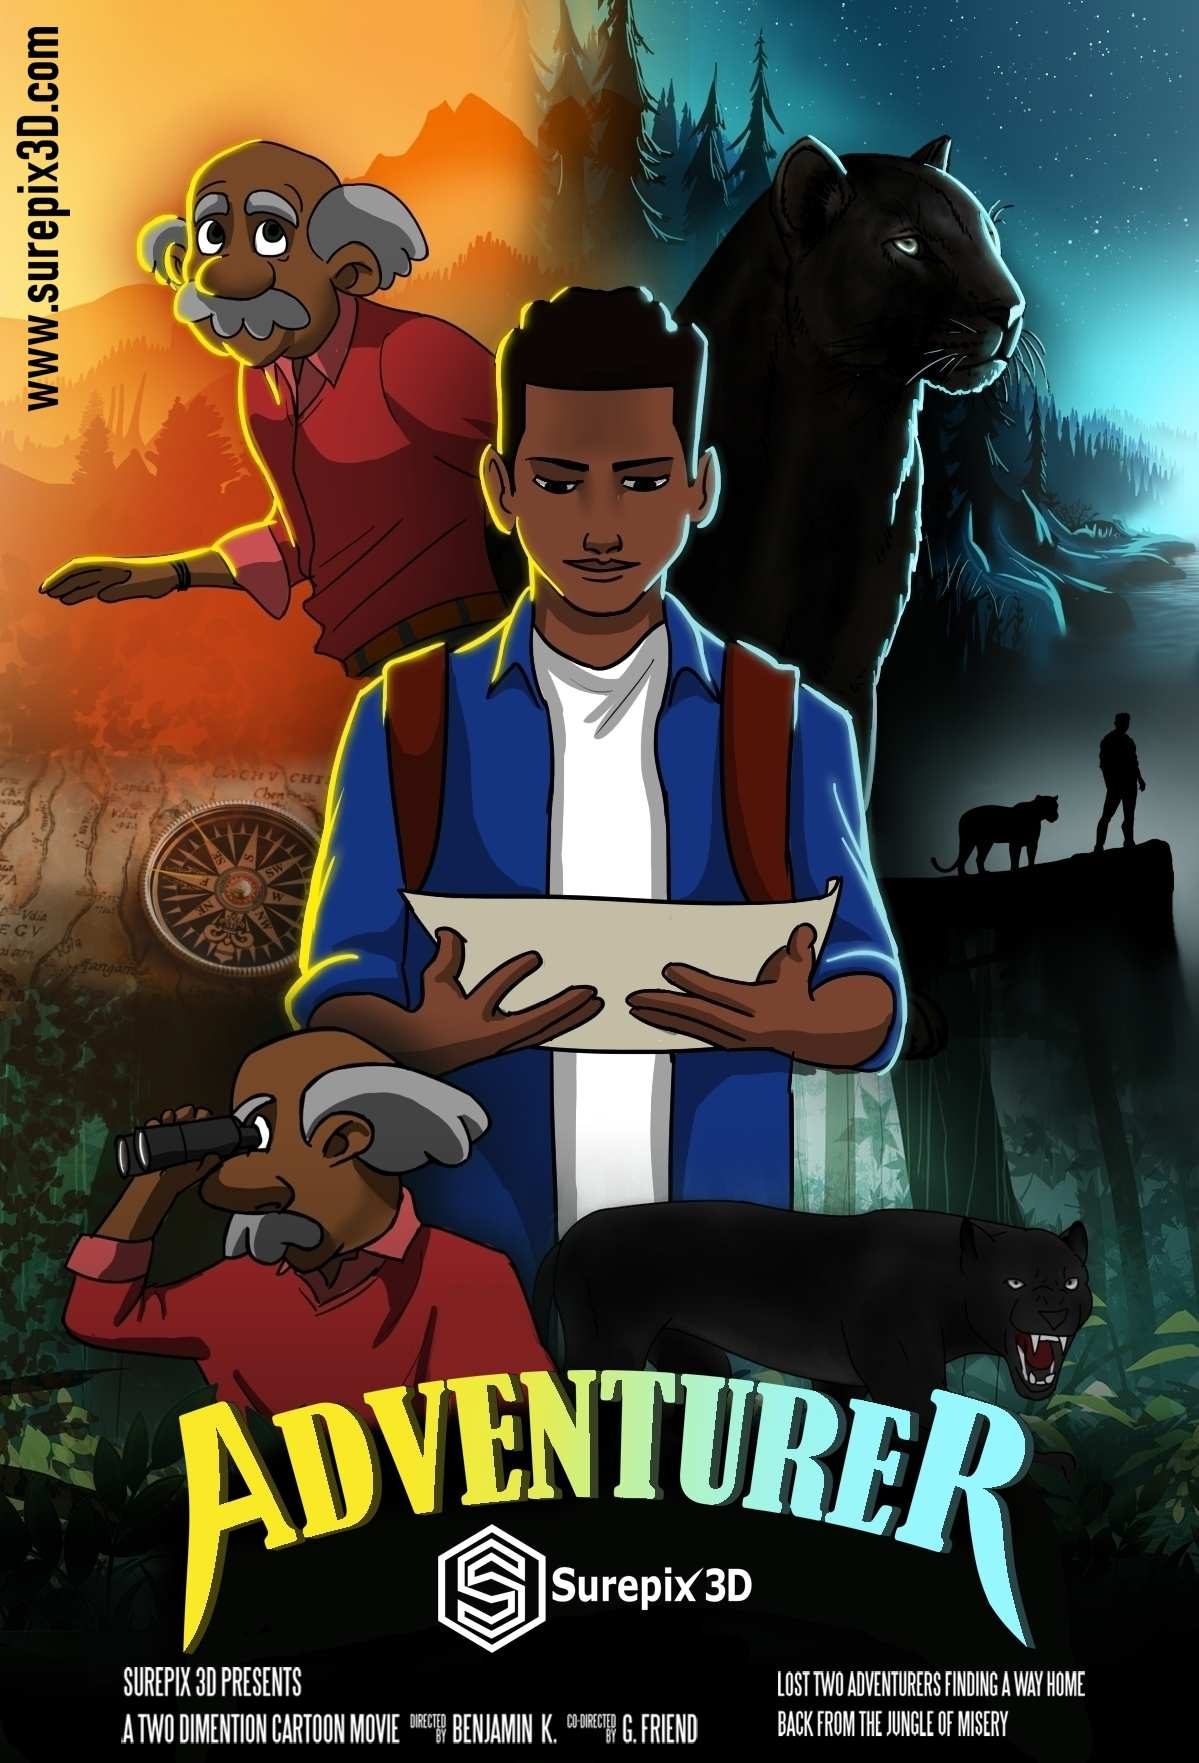 final Adventurer poster